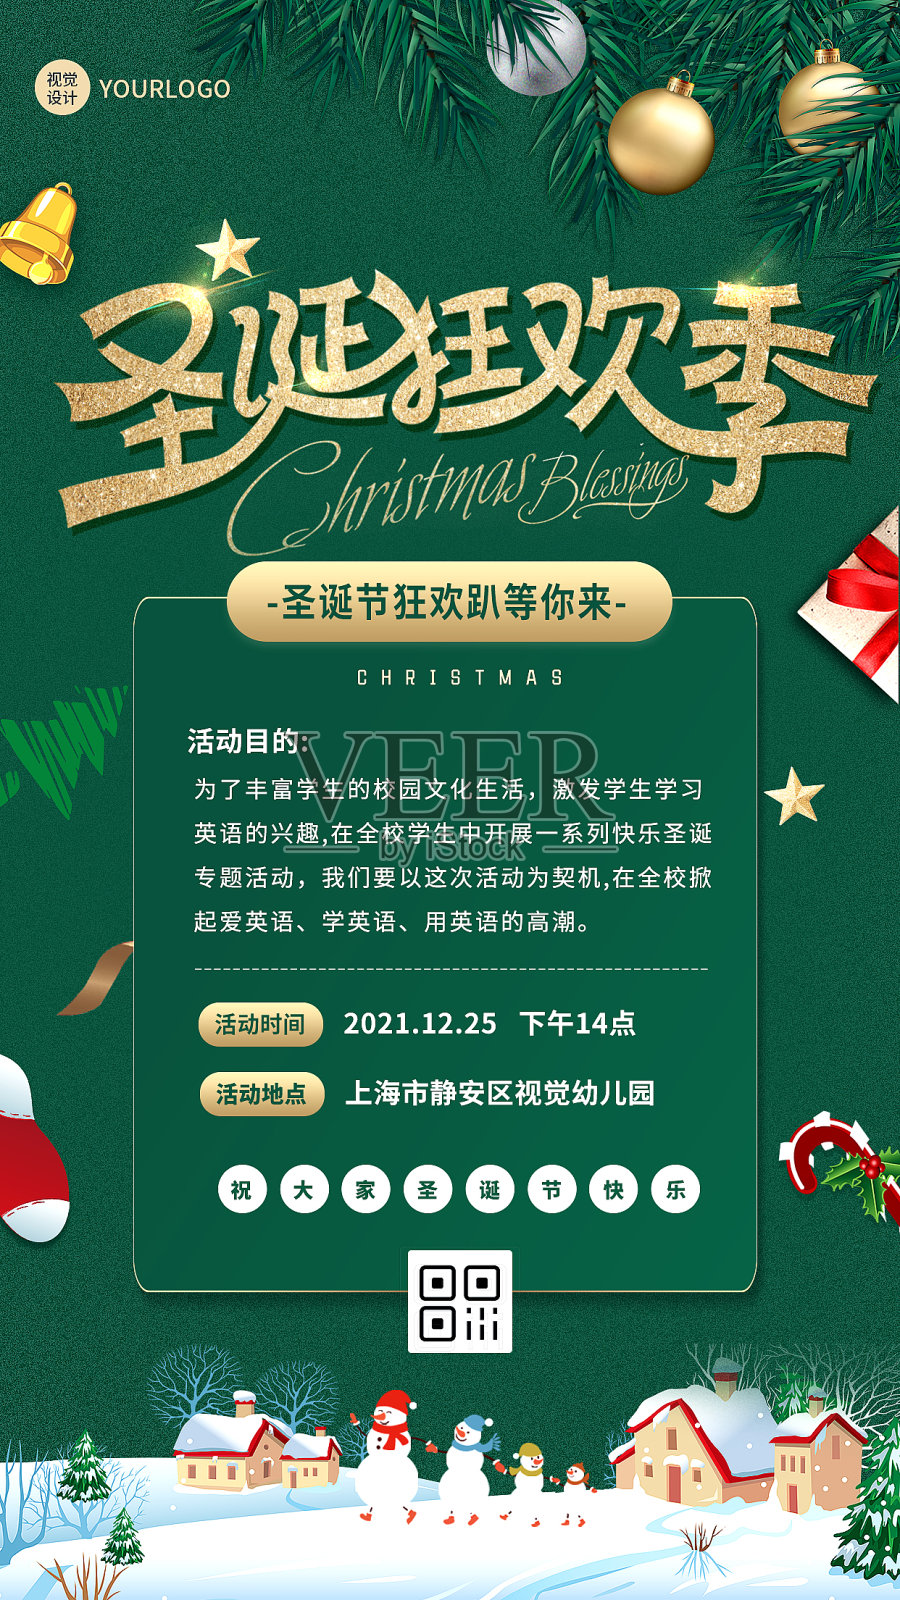 圣诞节活动绿色简约大气手机海报设计模板素材